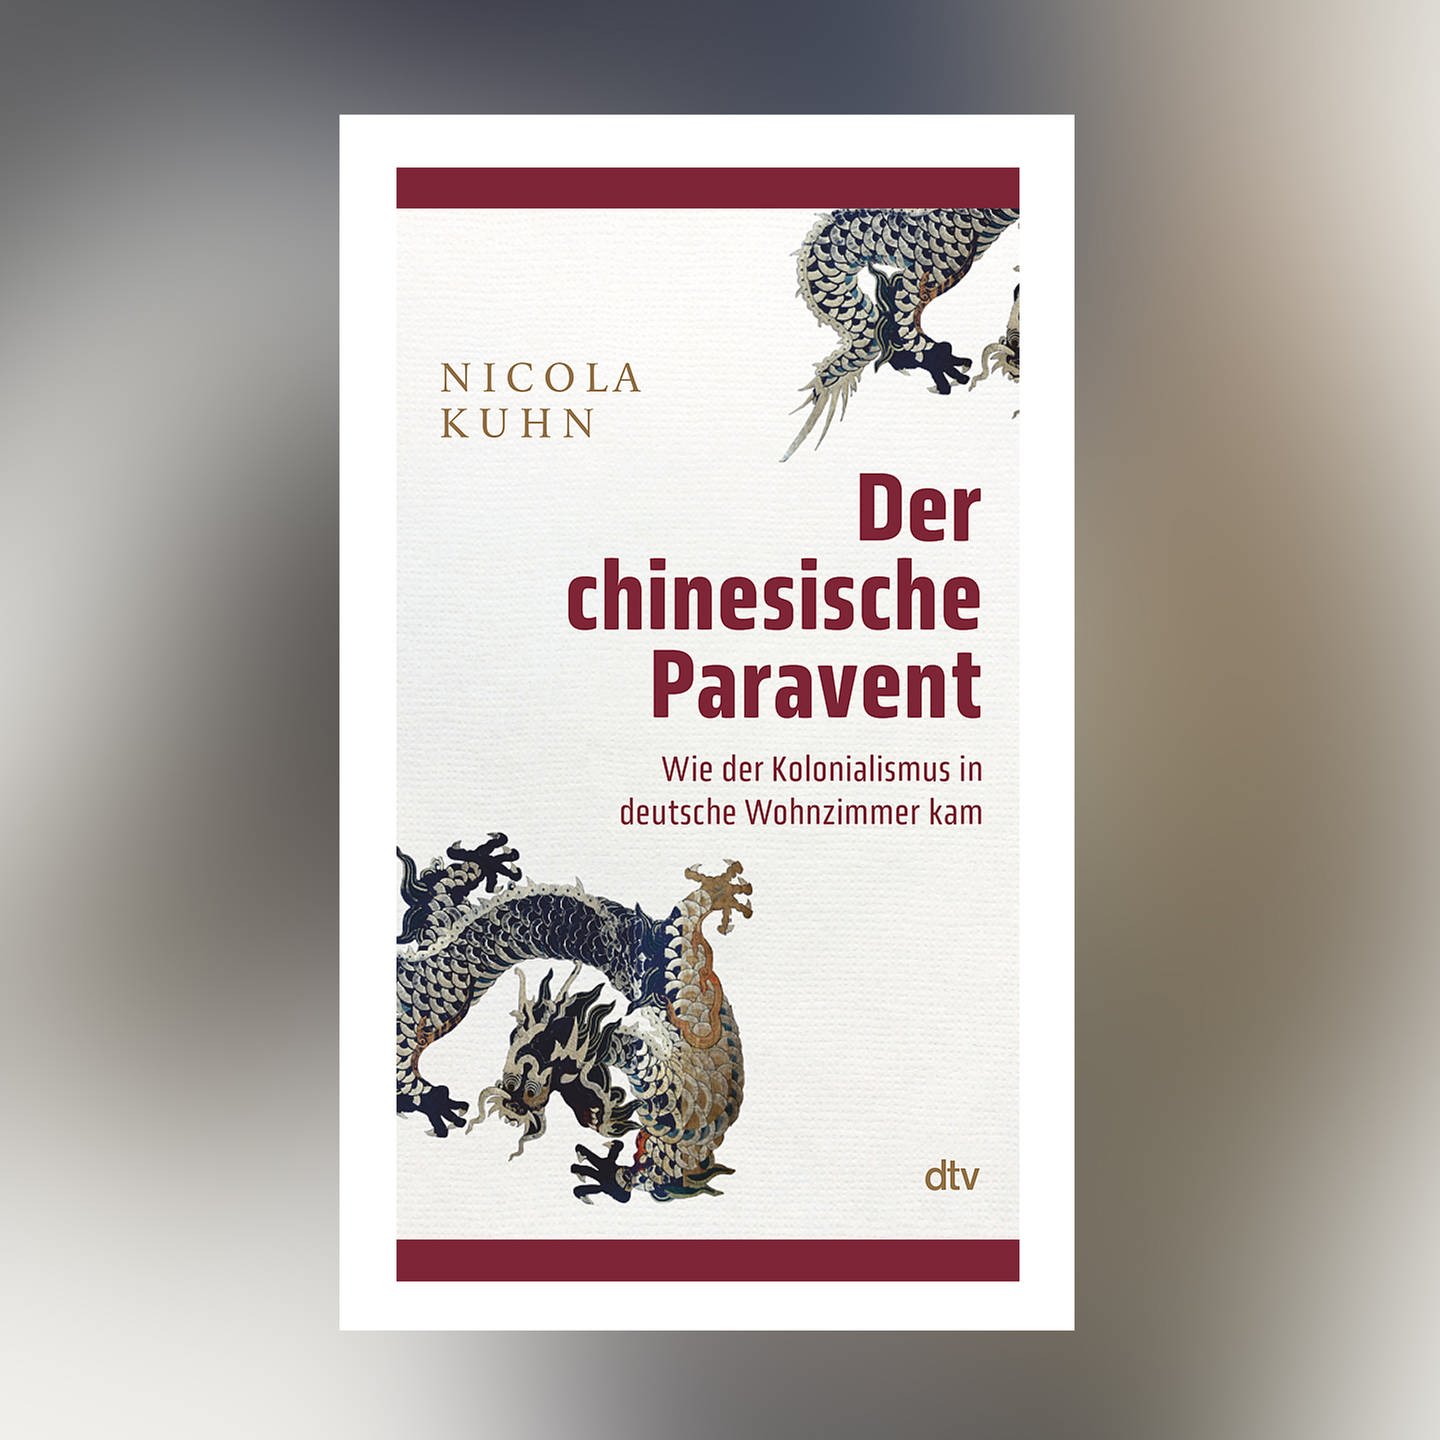 Nicola Kuhn – Der chinesische Paravent. Wie der Kolonialismus in deutsche Wohnzimmer kam